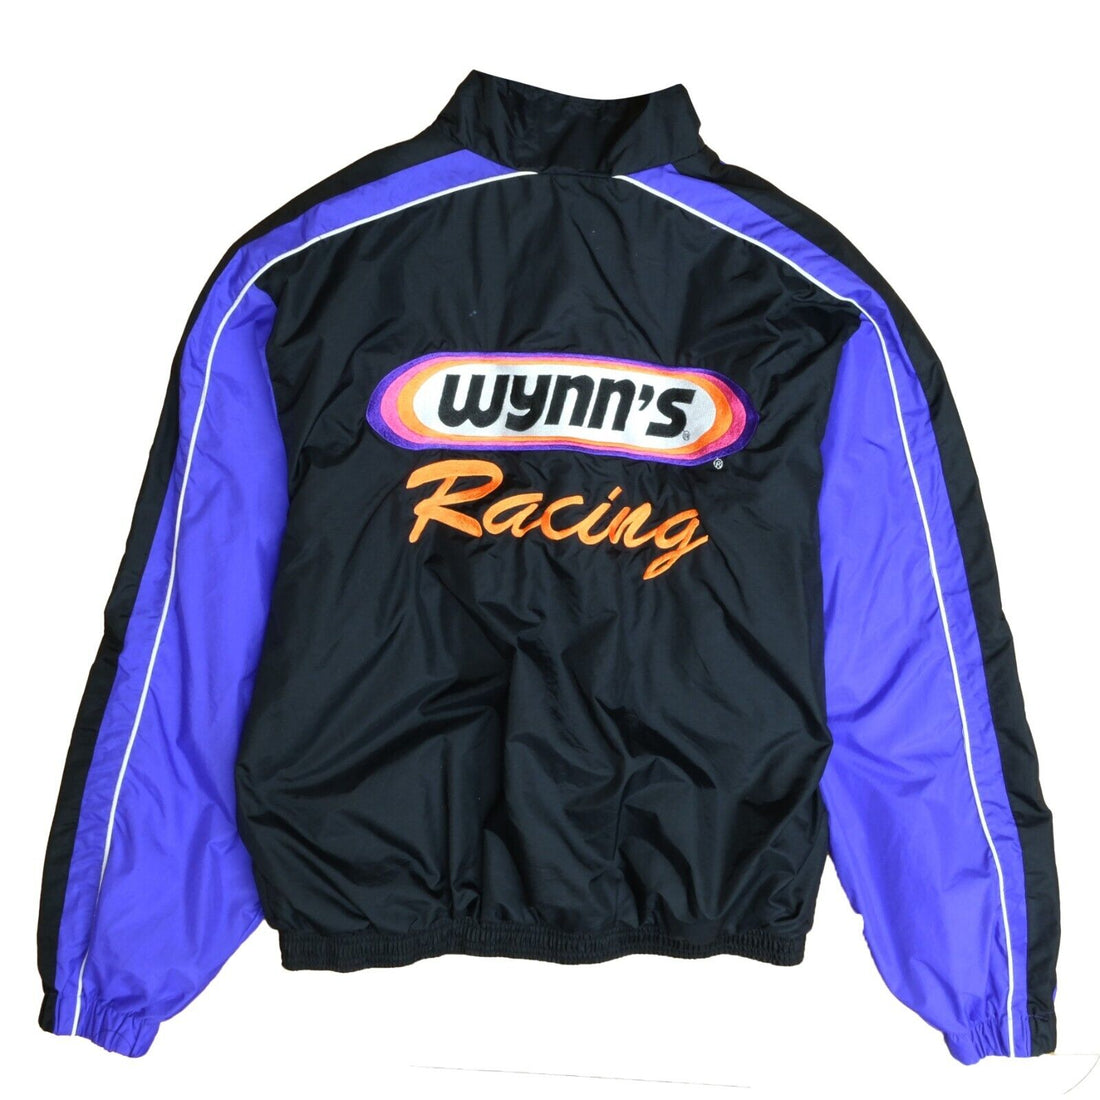 Vintage Wynn's Racing Windbreaker Light Jacket Size Large